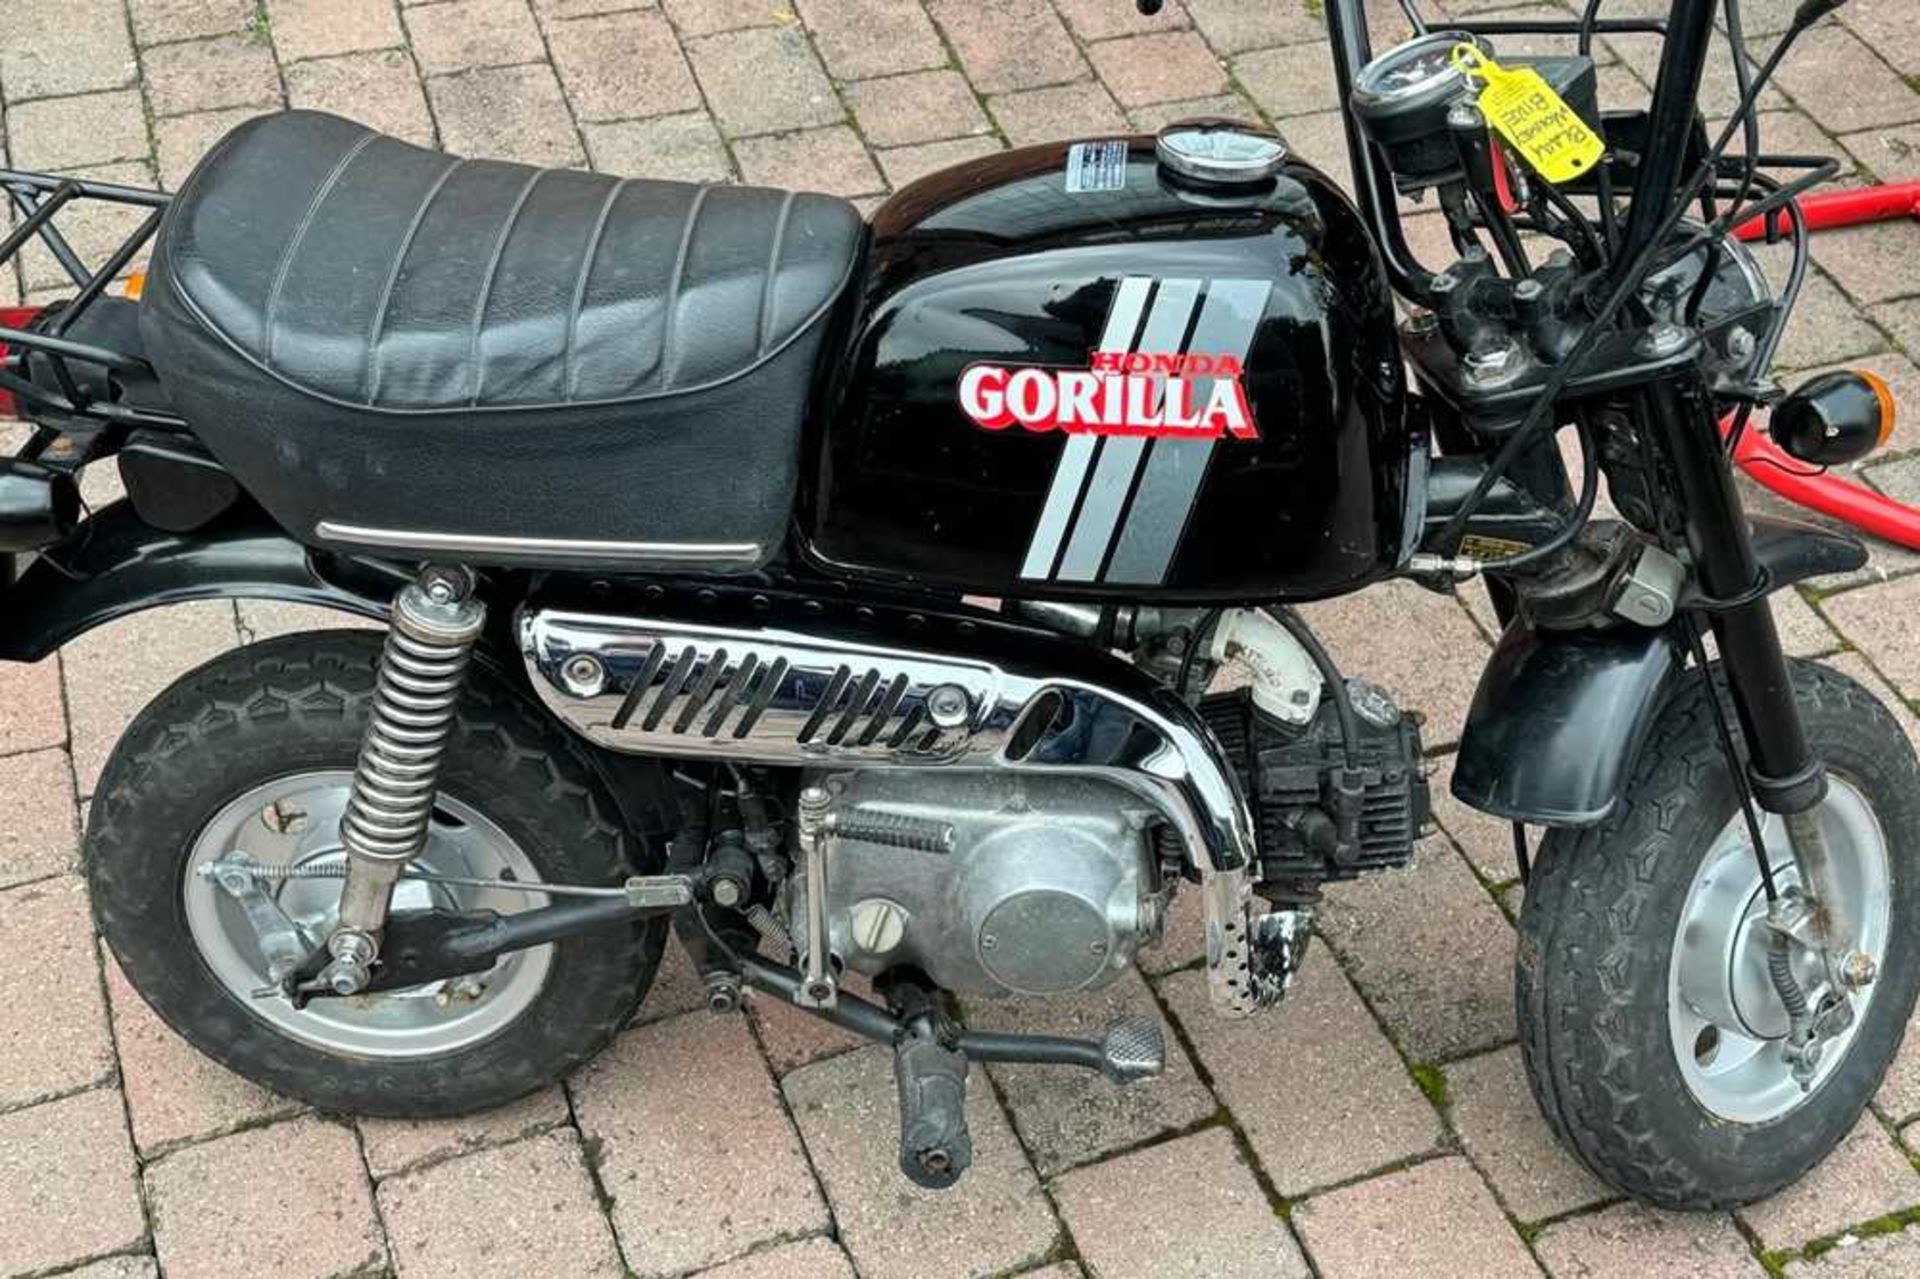 c.1981 Honda Z50 Gorilla JDM Monkey Bike